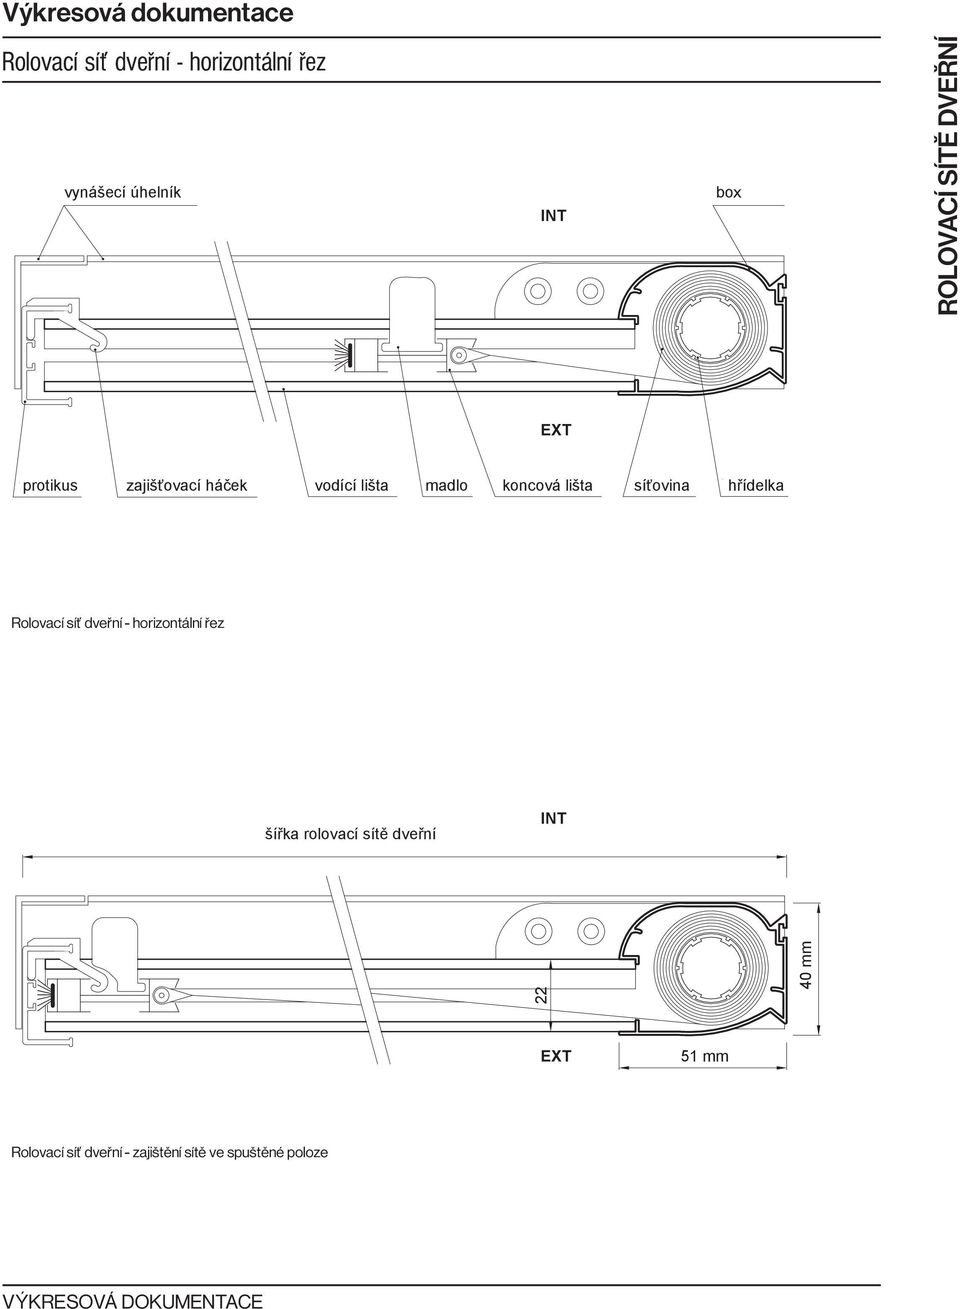 hřídelka - horizontální řez šířka rolovací sítě dveřní INT 22 40 mm